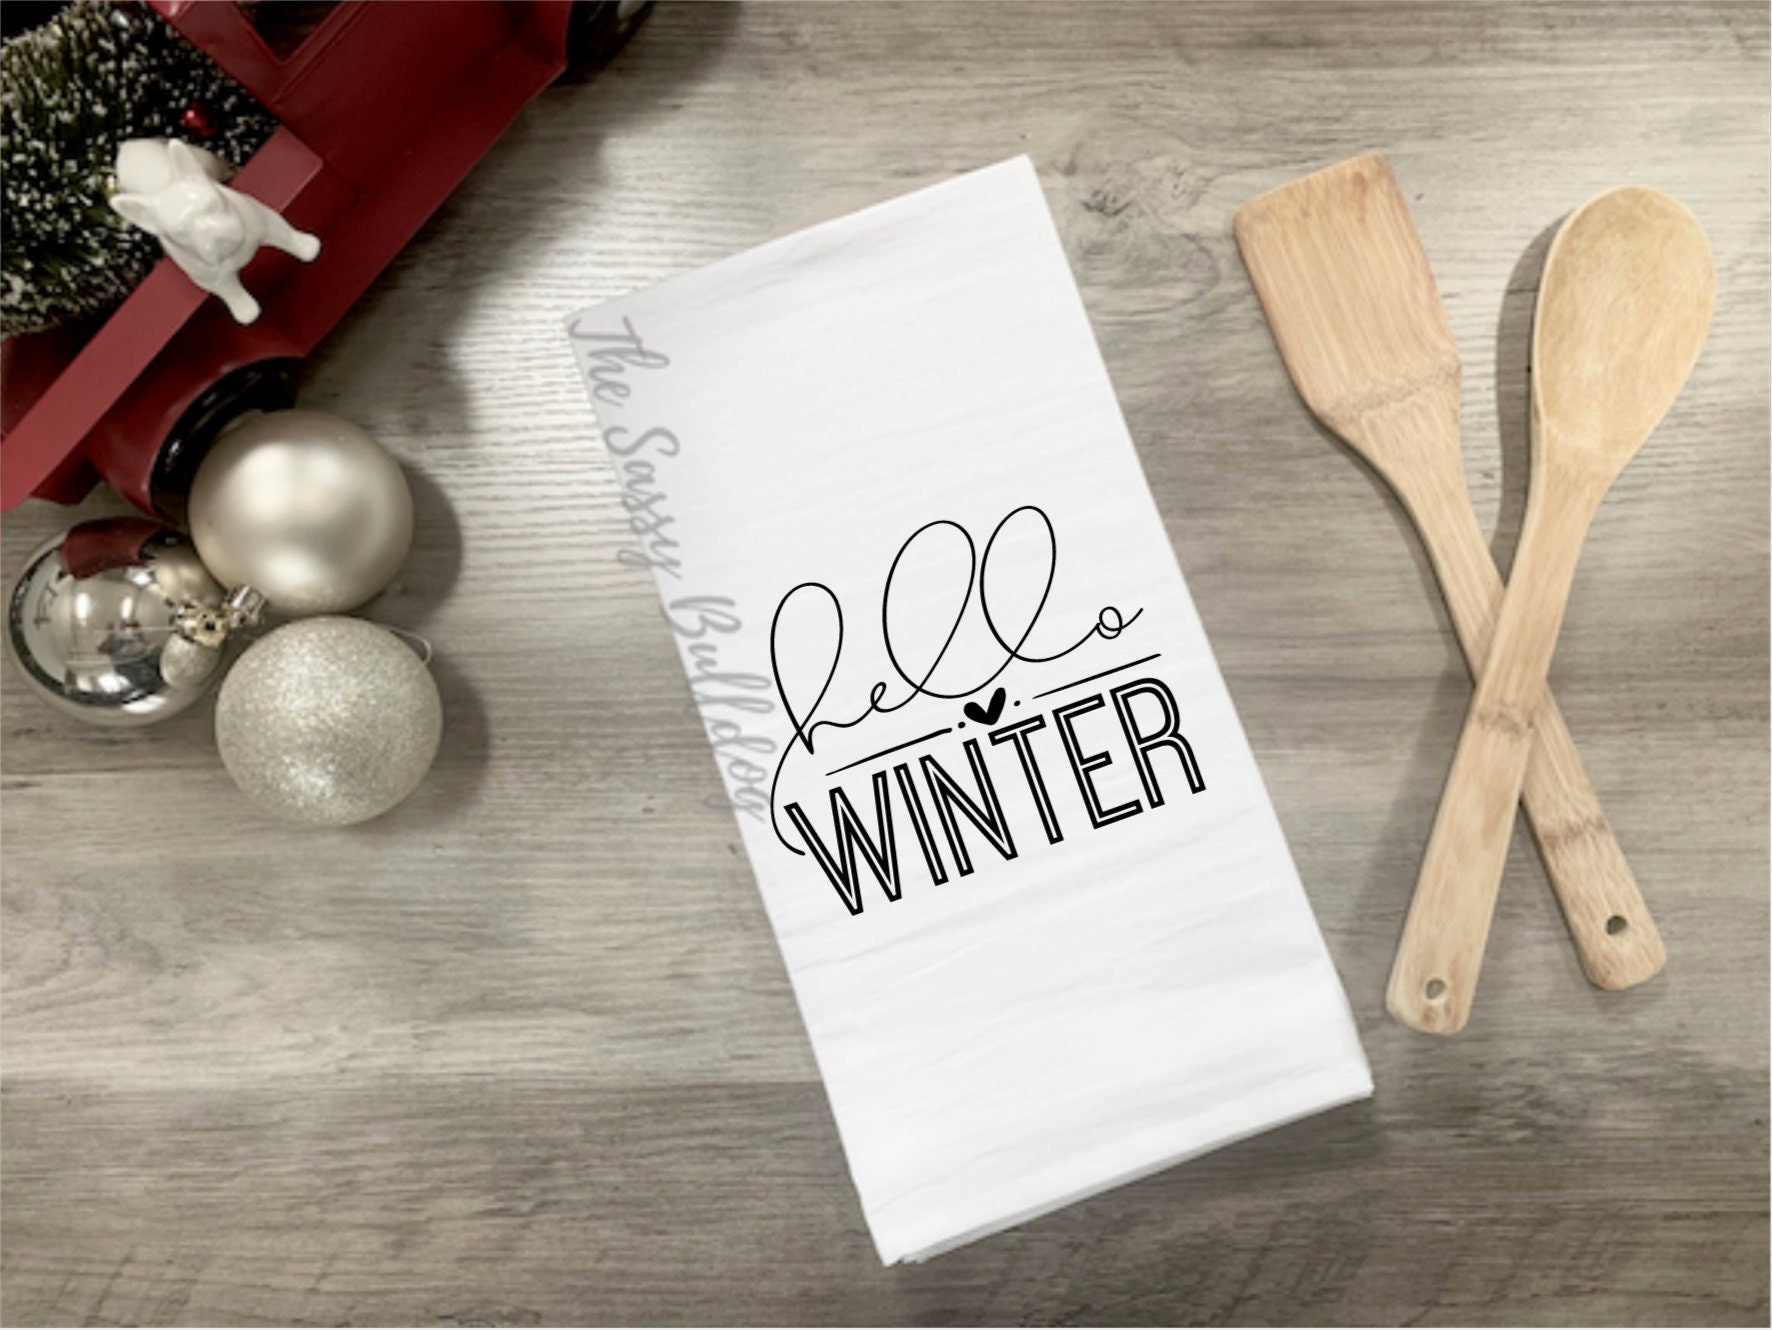 Warm Winter Wishes Mittens – Kitchen Tea Towel